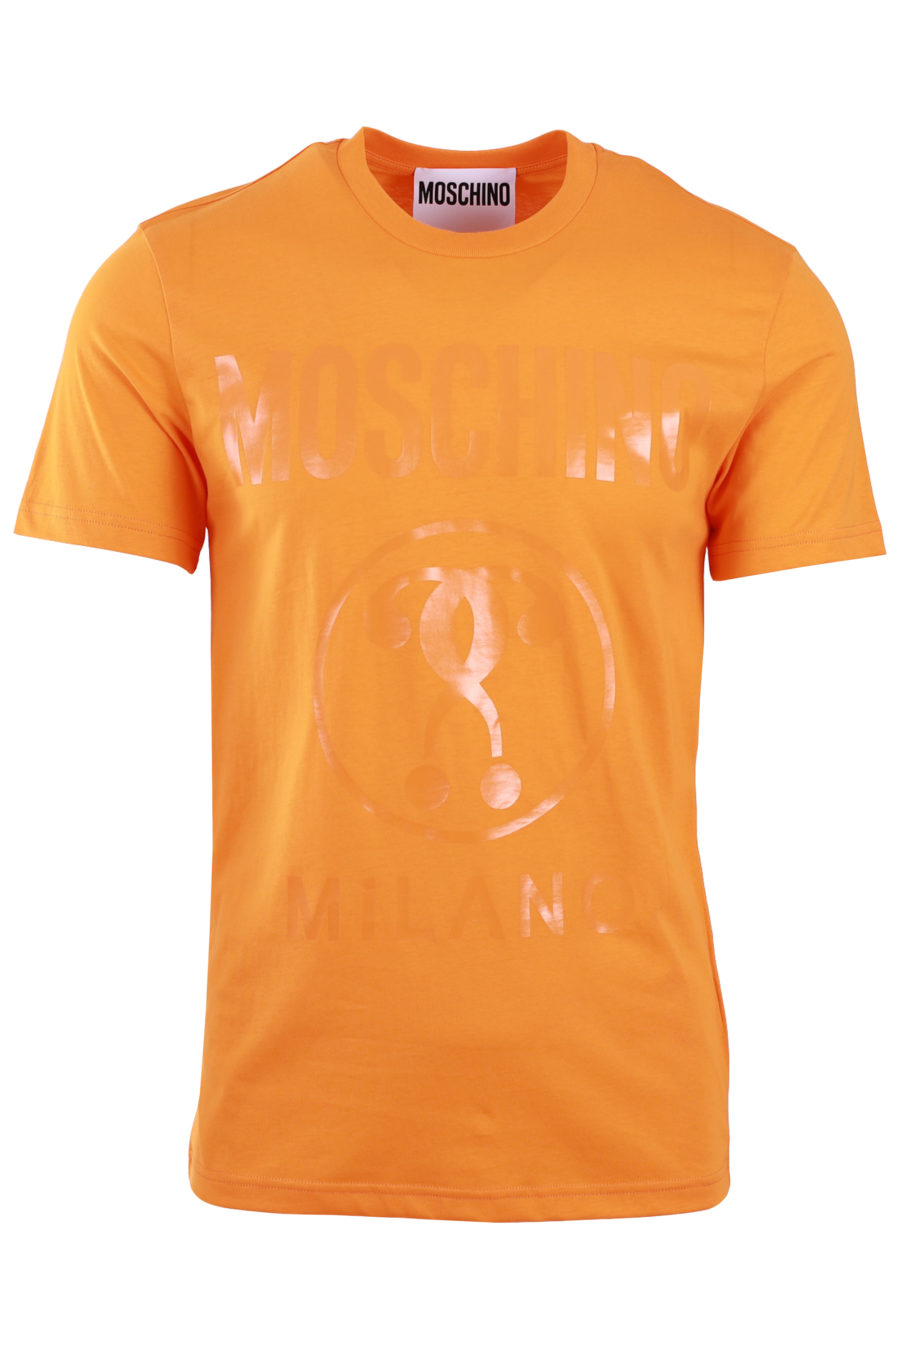 Orange T-shirt with double logo question - 3505cfbdba7a2726fba7305e5465e25e974de2b5